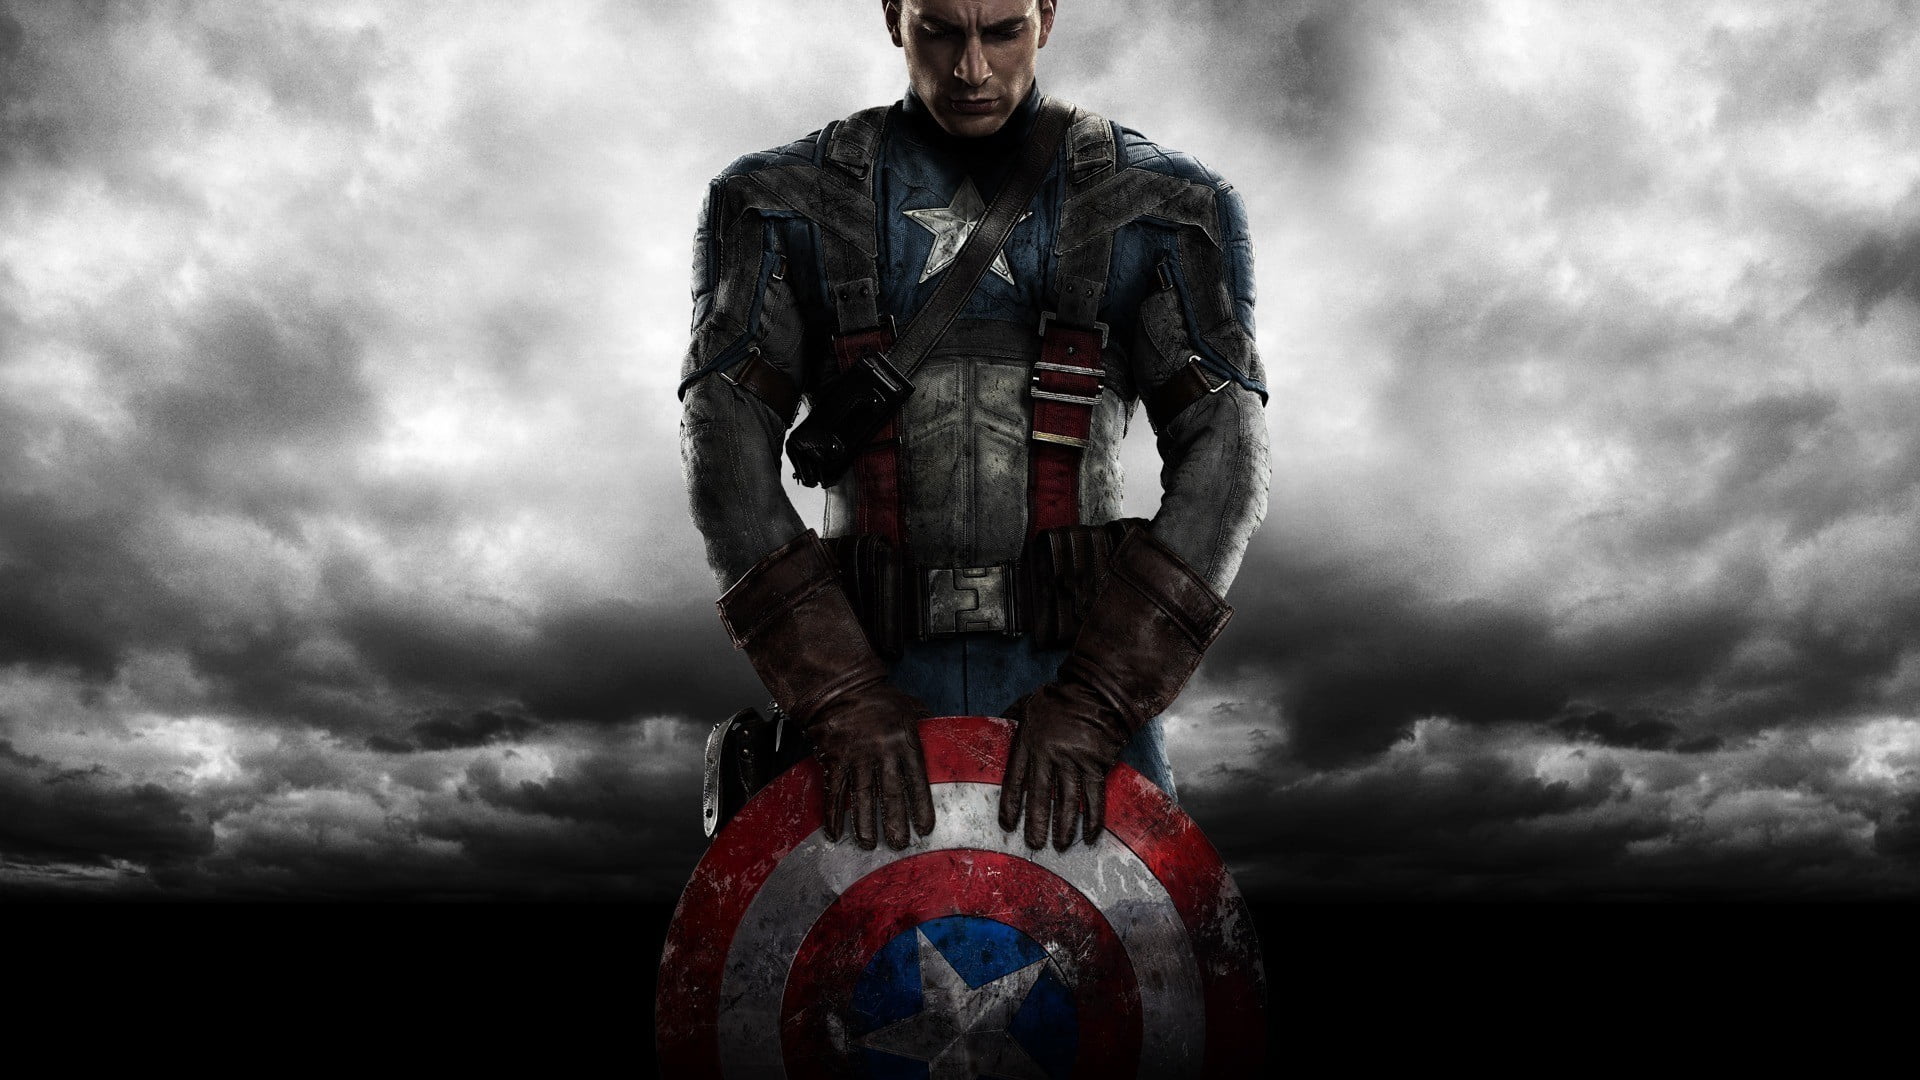 Captain America wallpaper, Captain America: The First Avenger